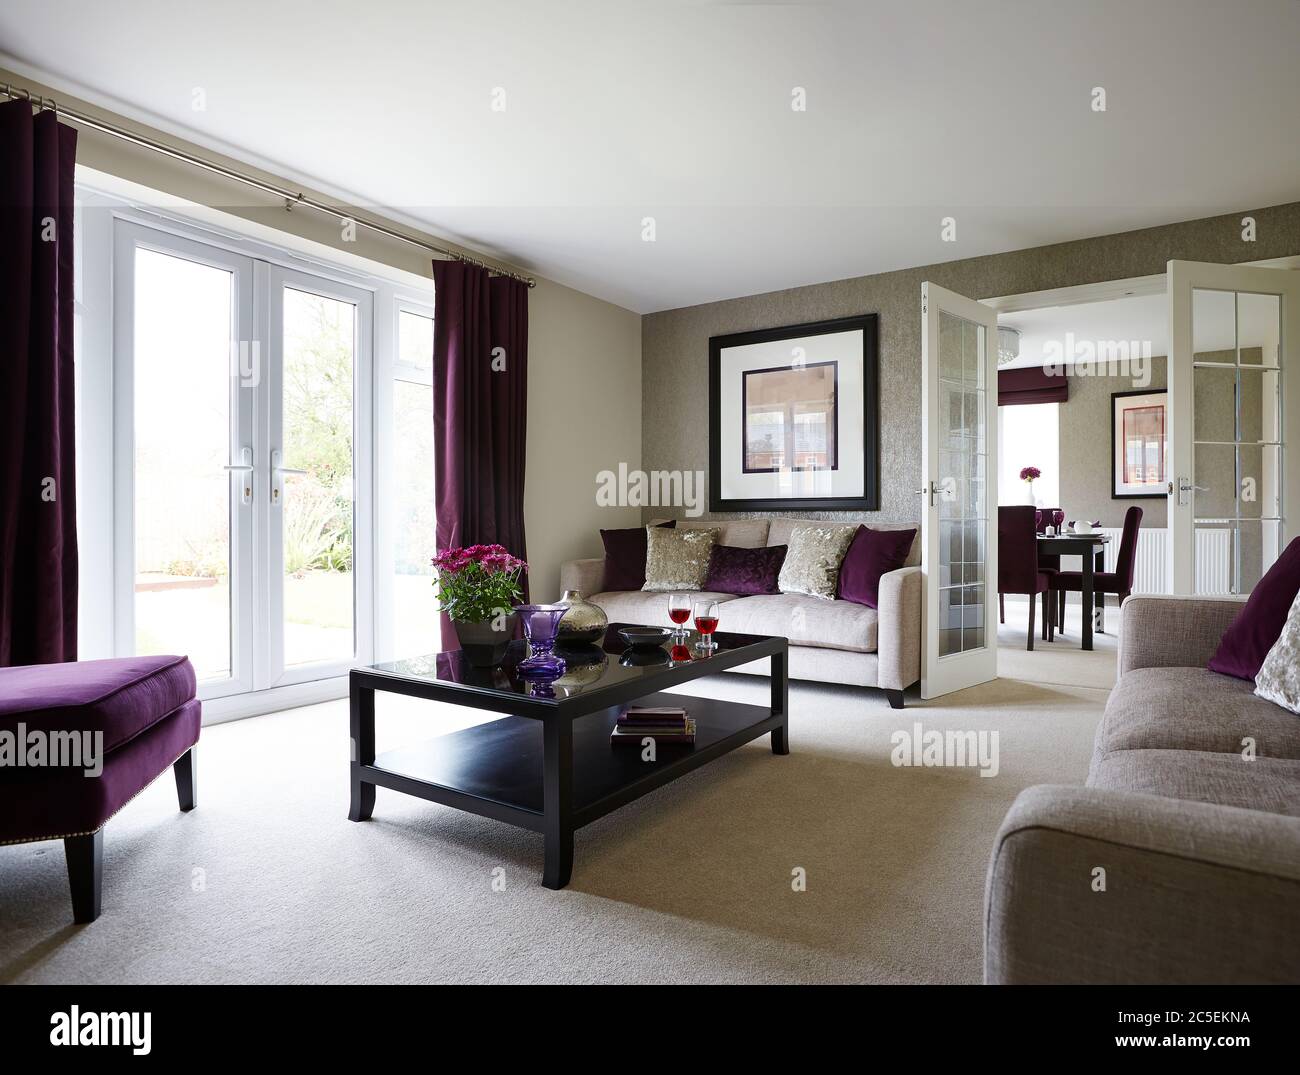 Foto di un bellissimo interno di un soggiorno con mobili colorati Foto Stock